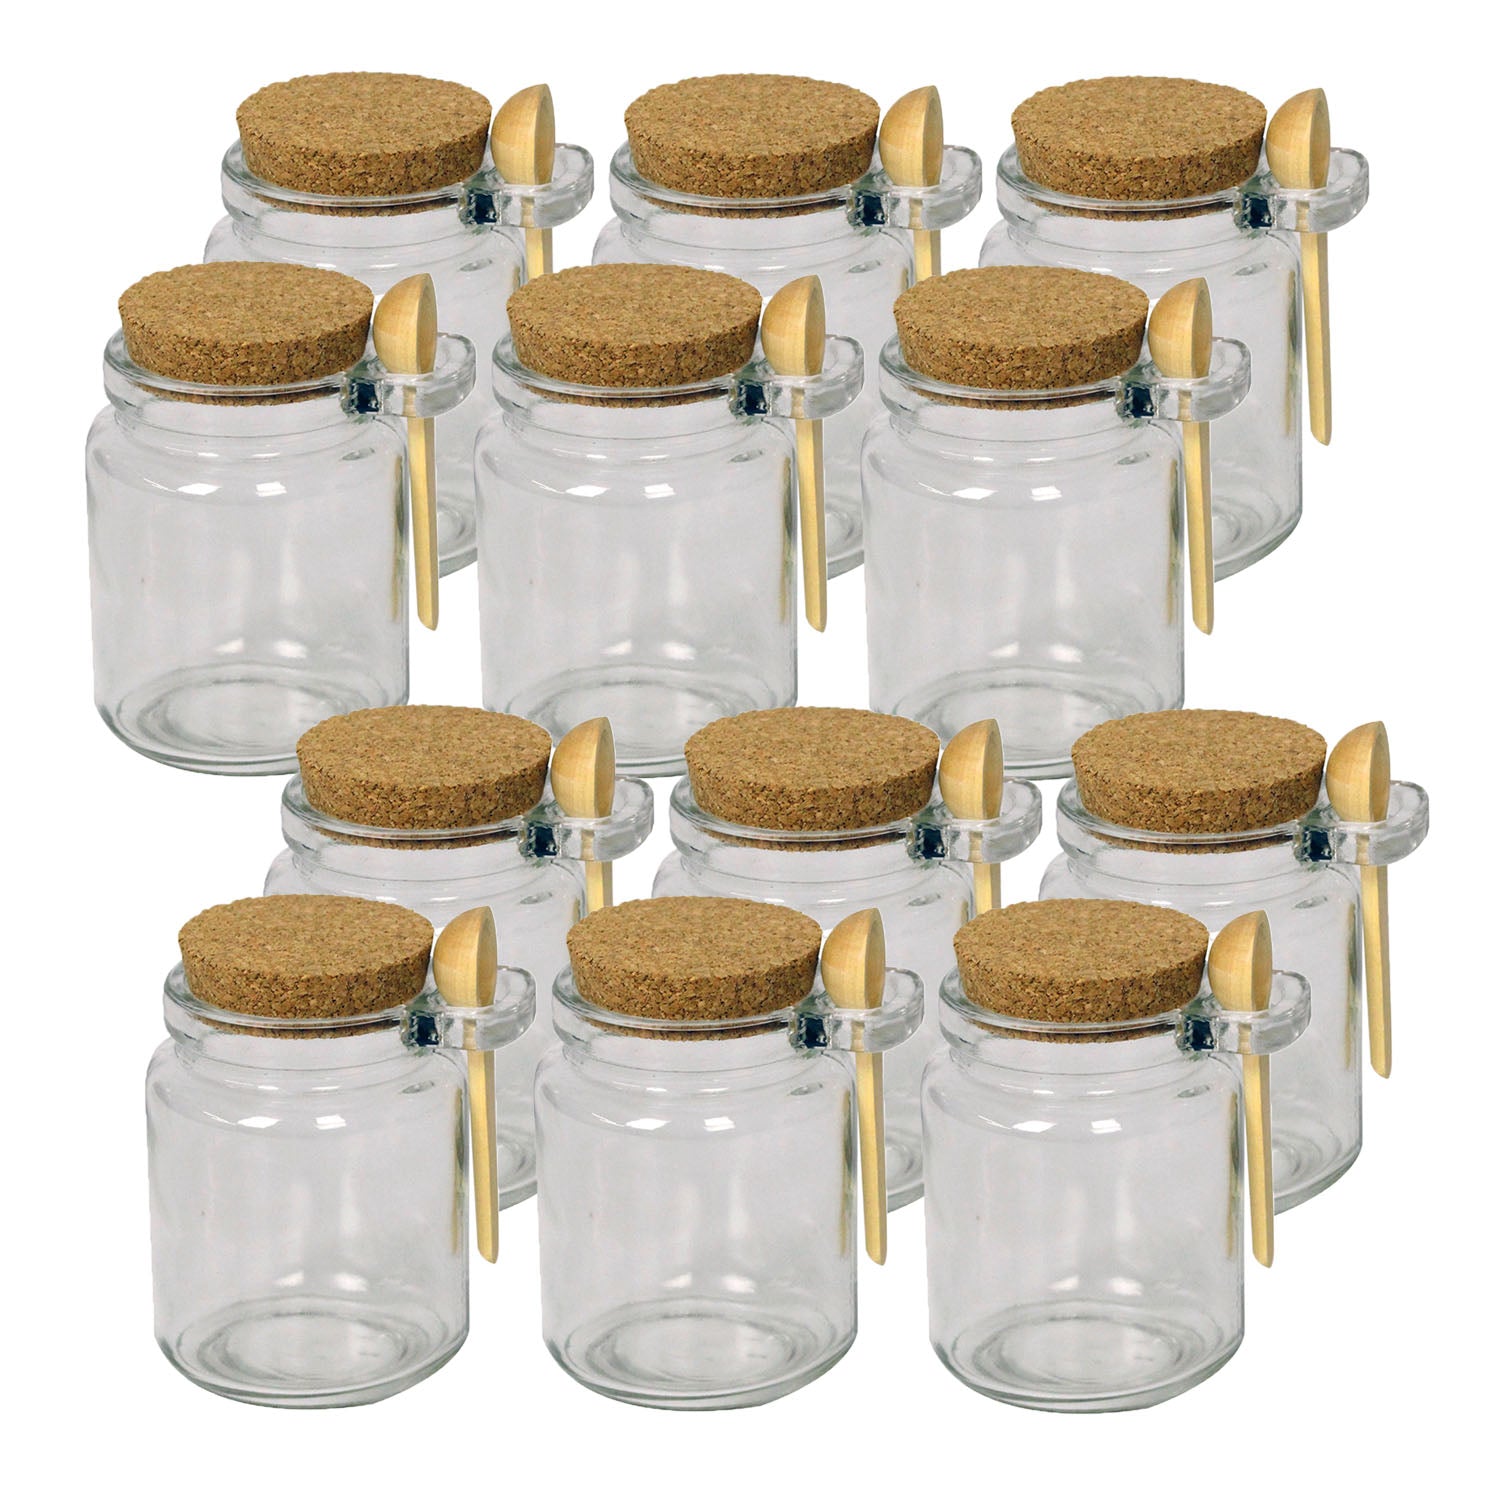 12pcs Small Glass Storage Jar Cork Top & Spoon